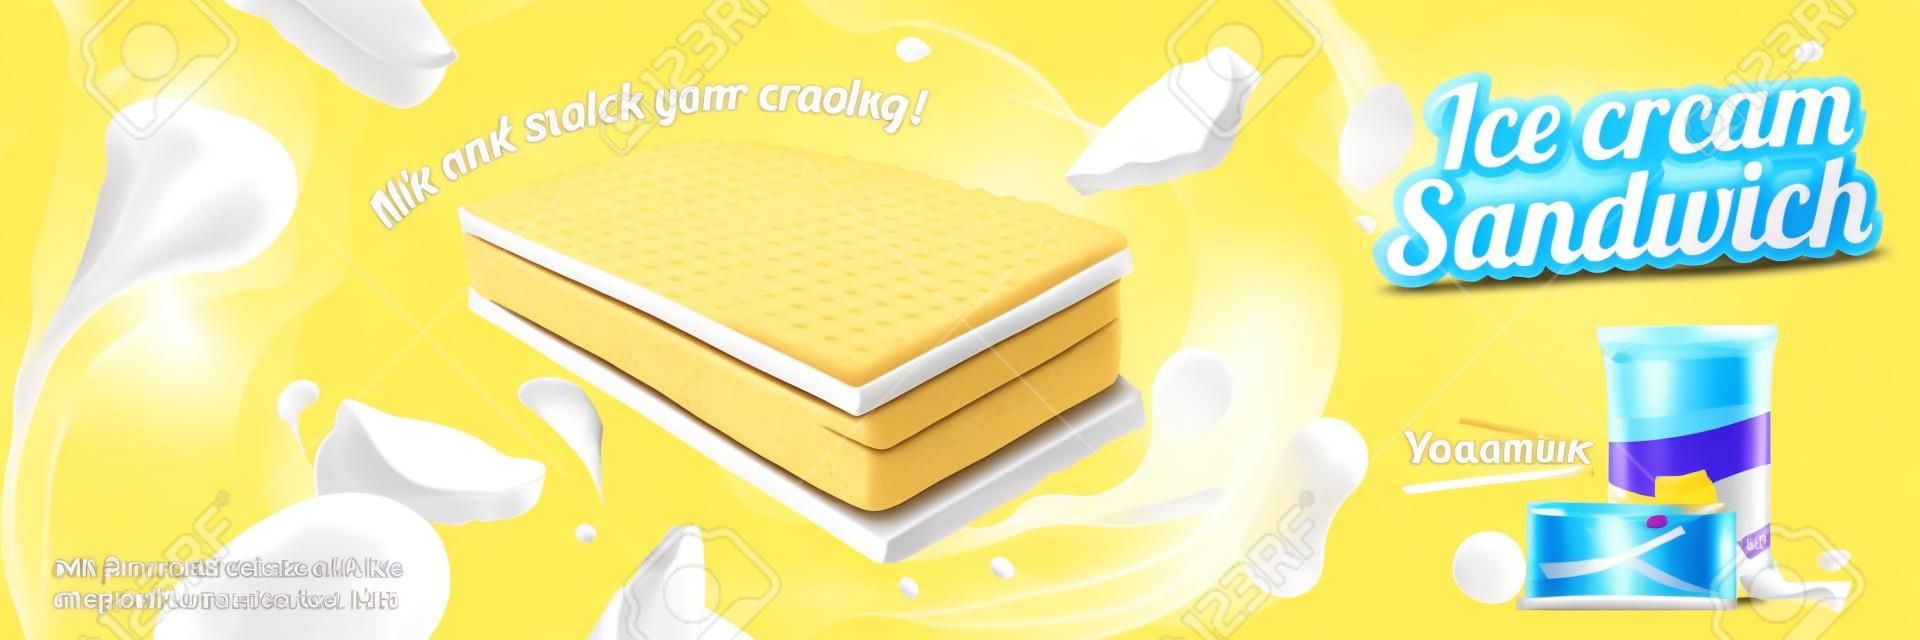 Sanduíche de sorvete com sabor de leite com bolachas e recheios em ilustração 3d, fundo amarelo cromado